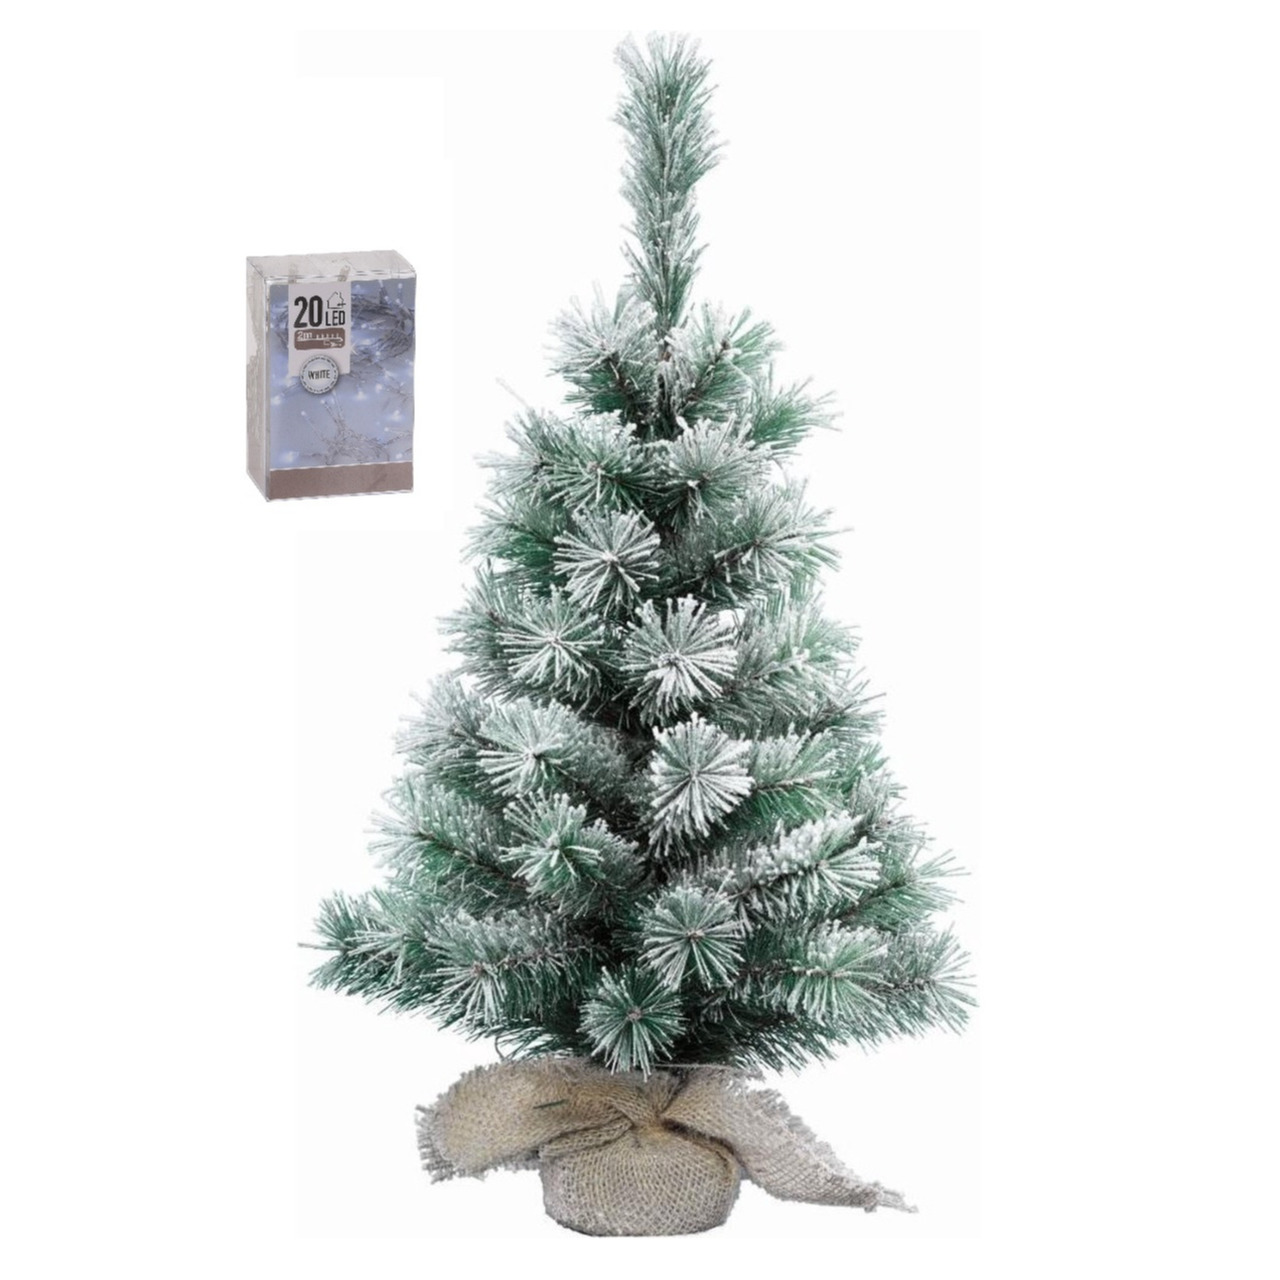 Kunst kerstboom met sneeuw 35 cm in jute zak inclusief 20 helder witte lampjes